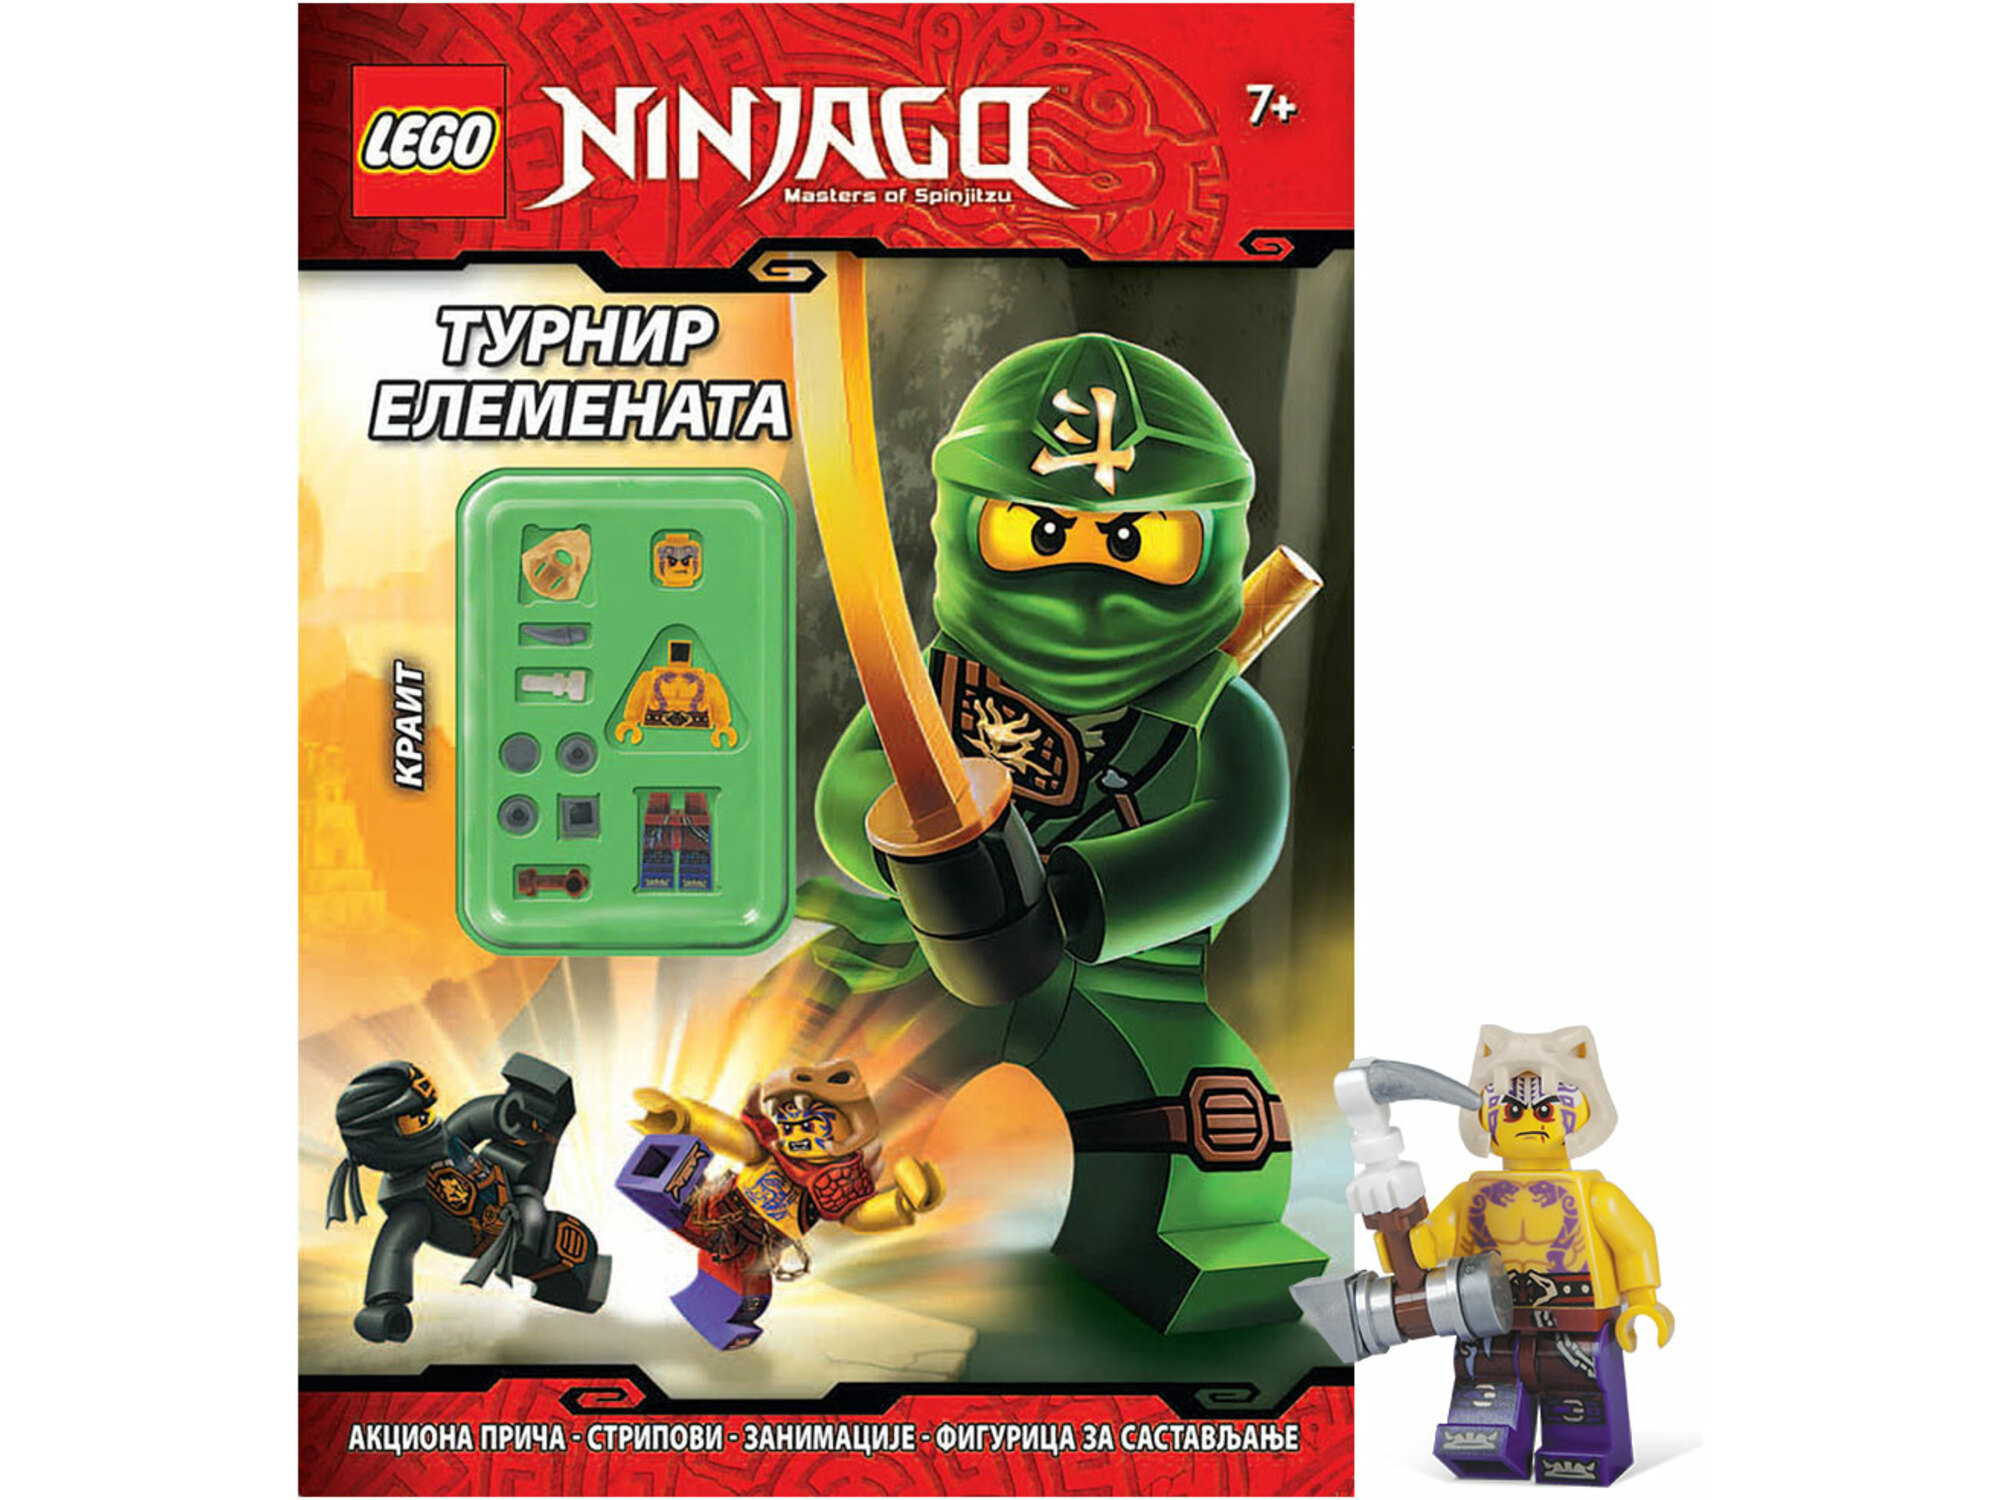 LEGO Ninjago Turnir elemenata 99035